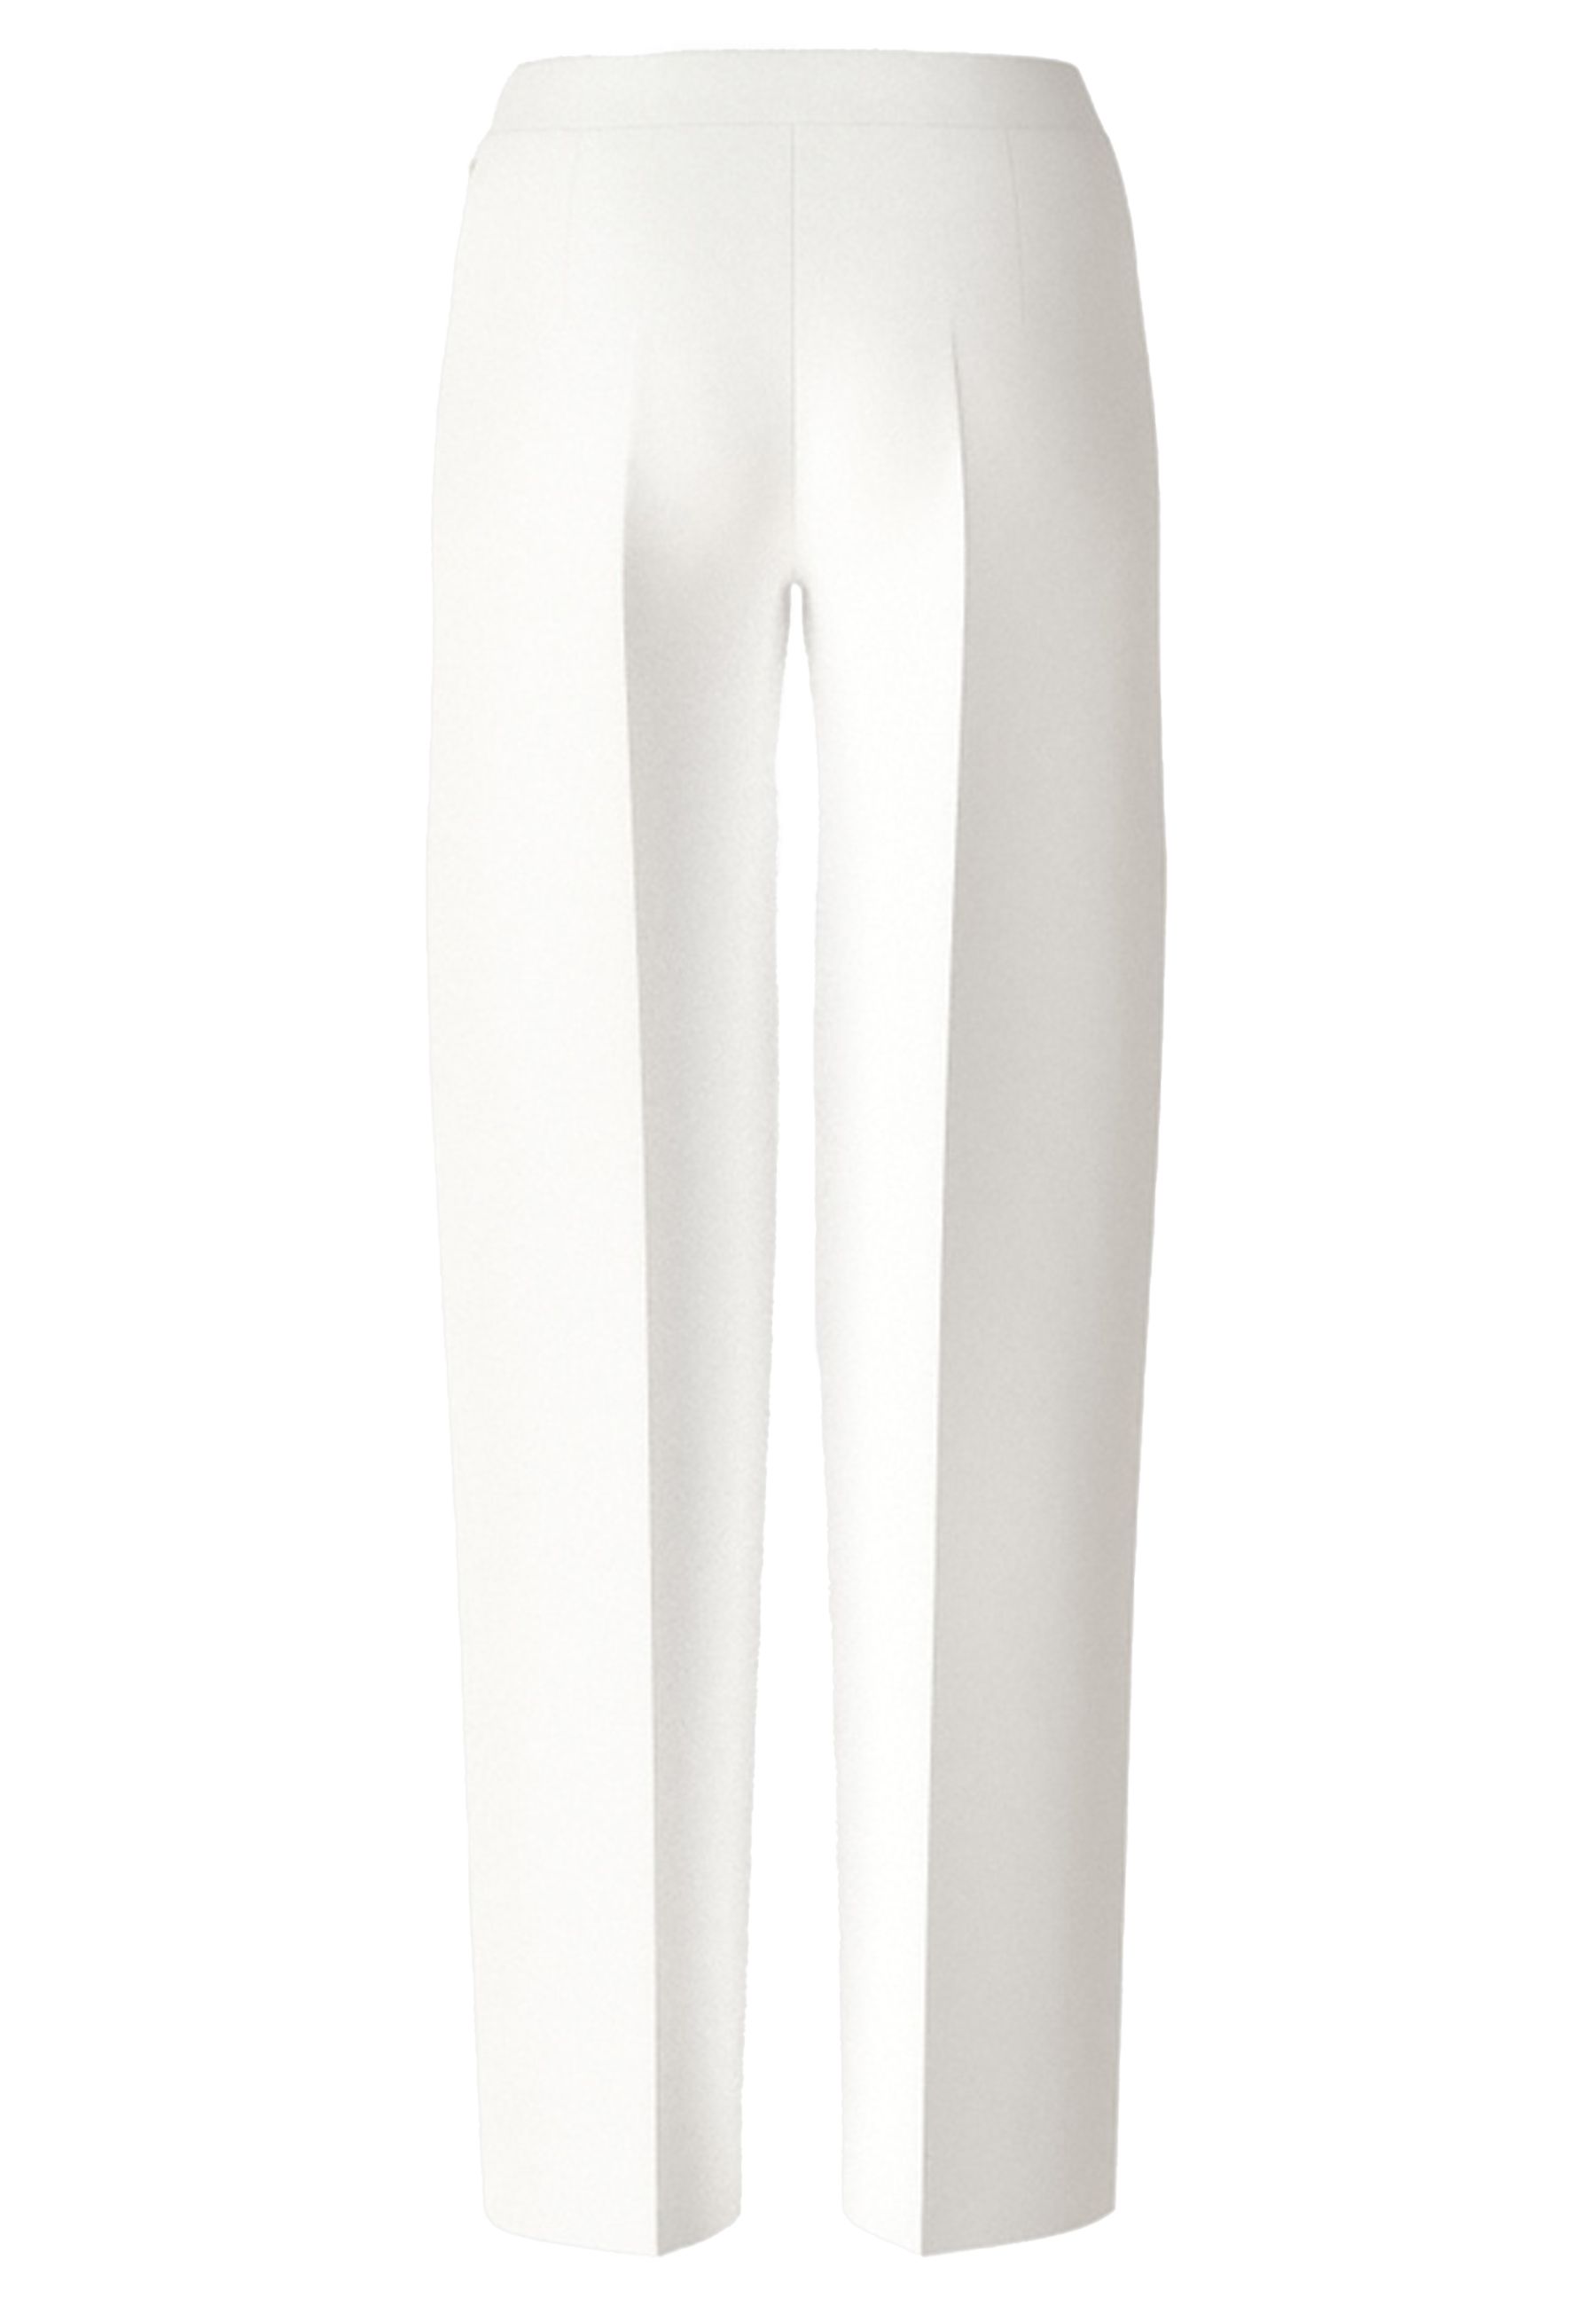 Pantalons Off White Wc 81.10 J42